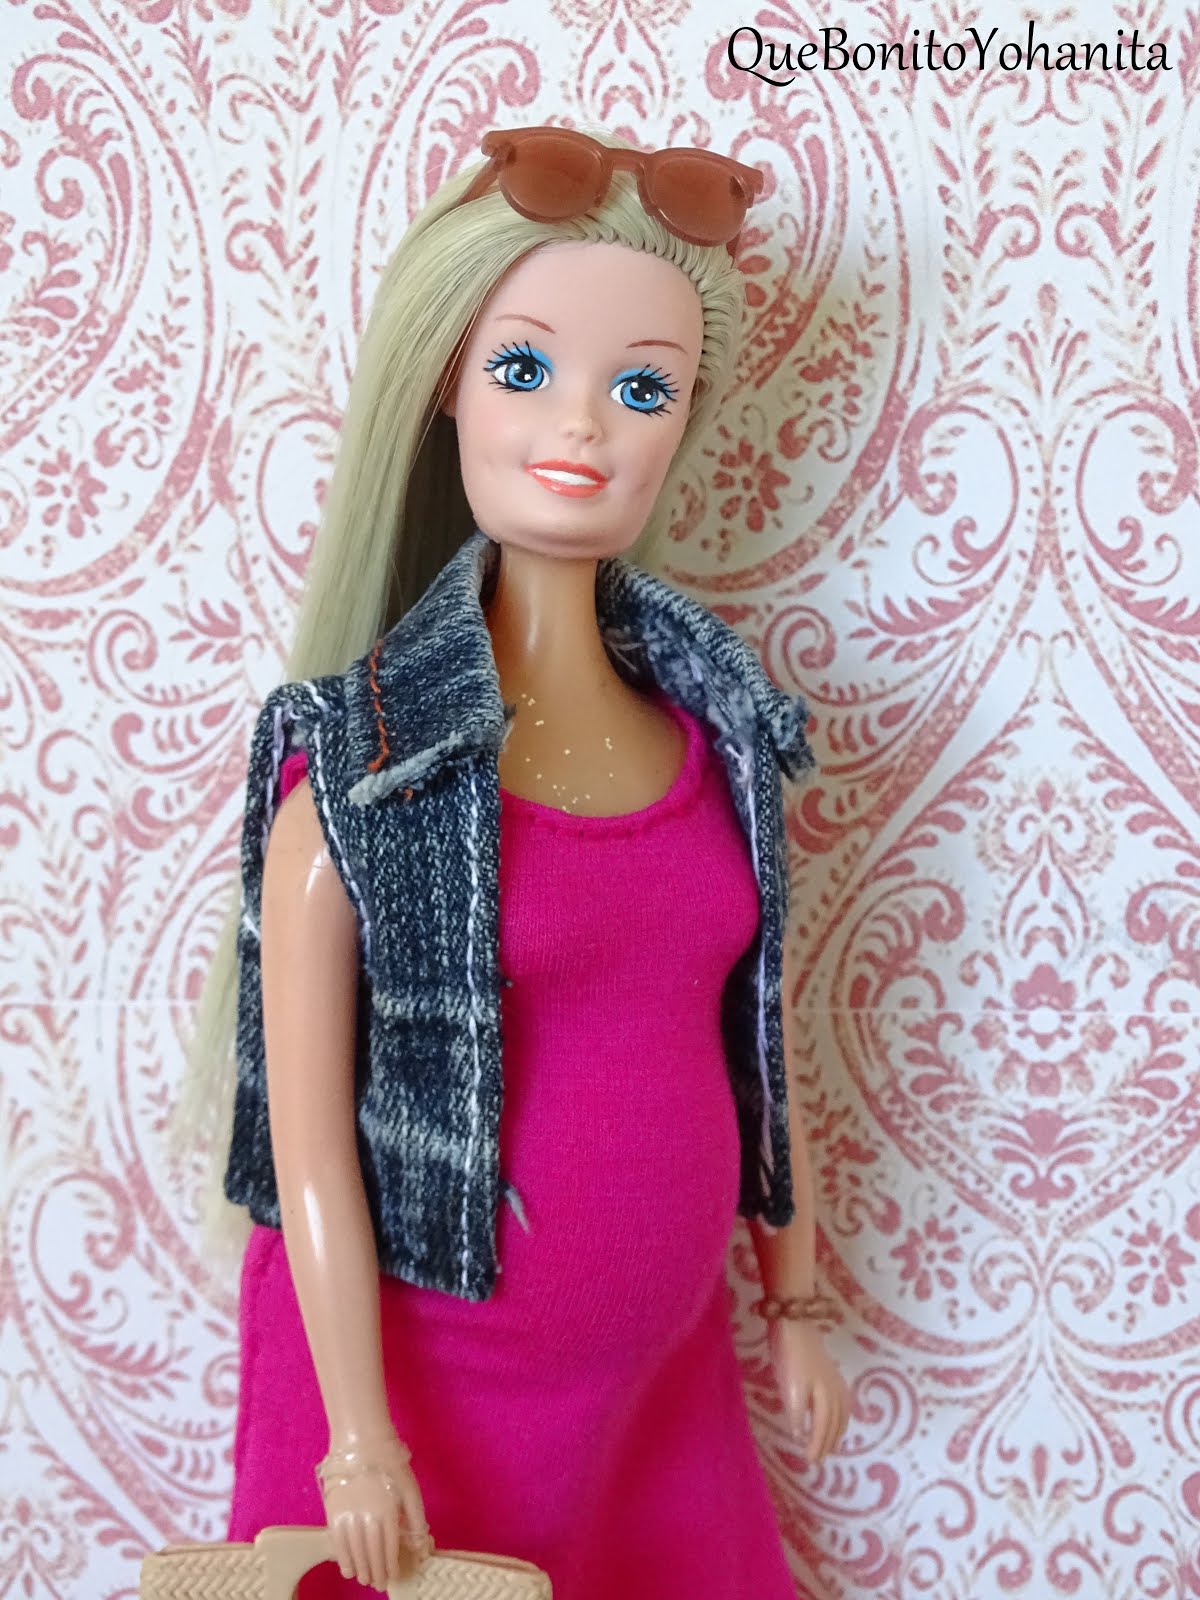 que bonito Yohanita!: Teresa, mi barbie embarazada